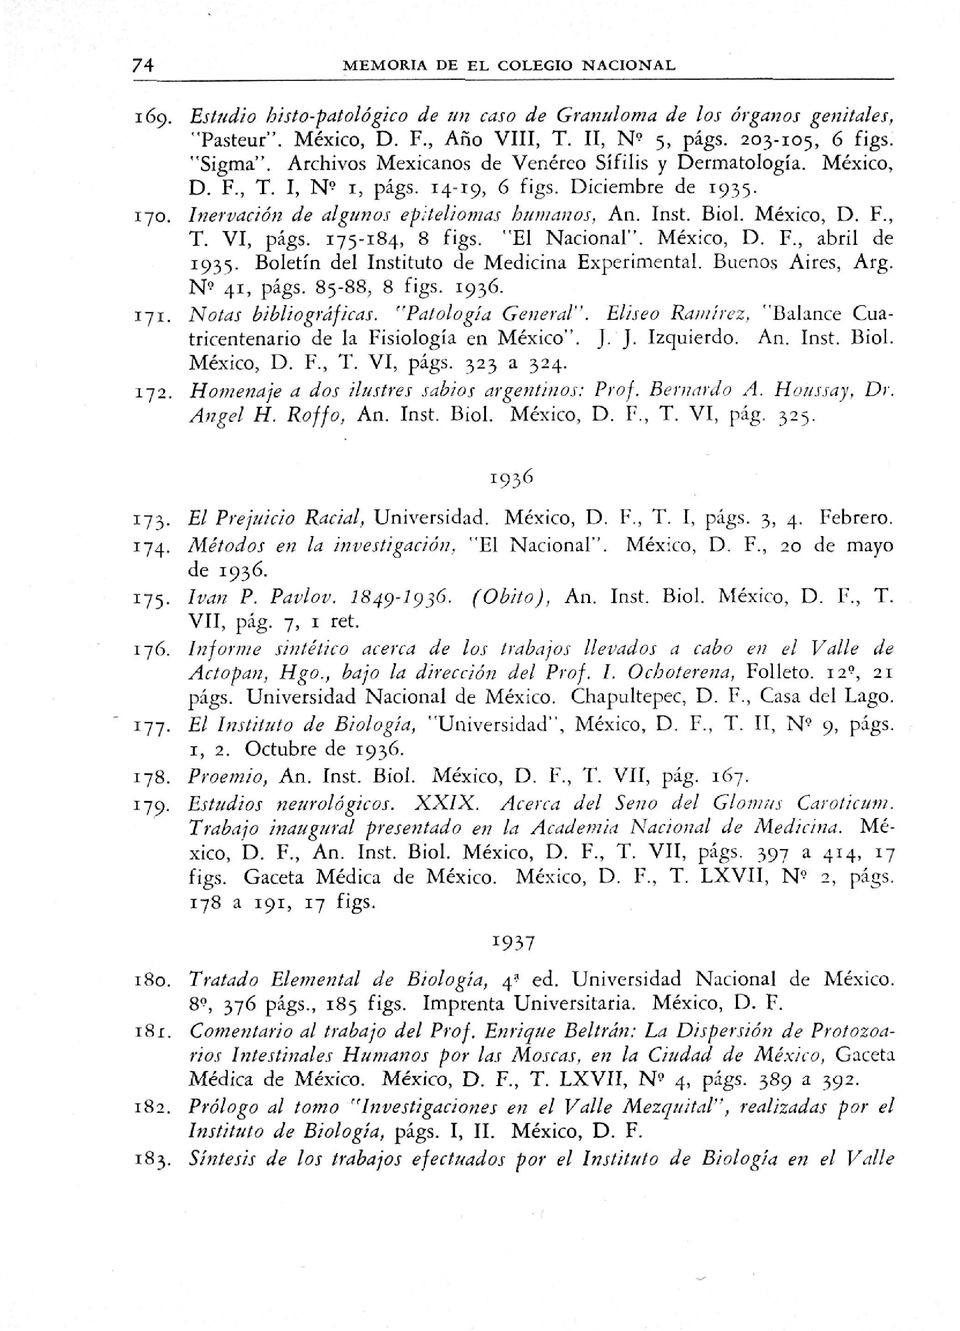 México, D. F., T. VI, págs. 175-184, 8 figs. "El Nacional". México, D. F., abril de 1935. Boletín del Instituto de Medicina Experimental. Buenos Aires, Arg. N^ 41, págs. 85-88, 8 figs. 1936. 171.